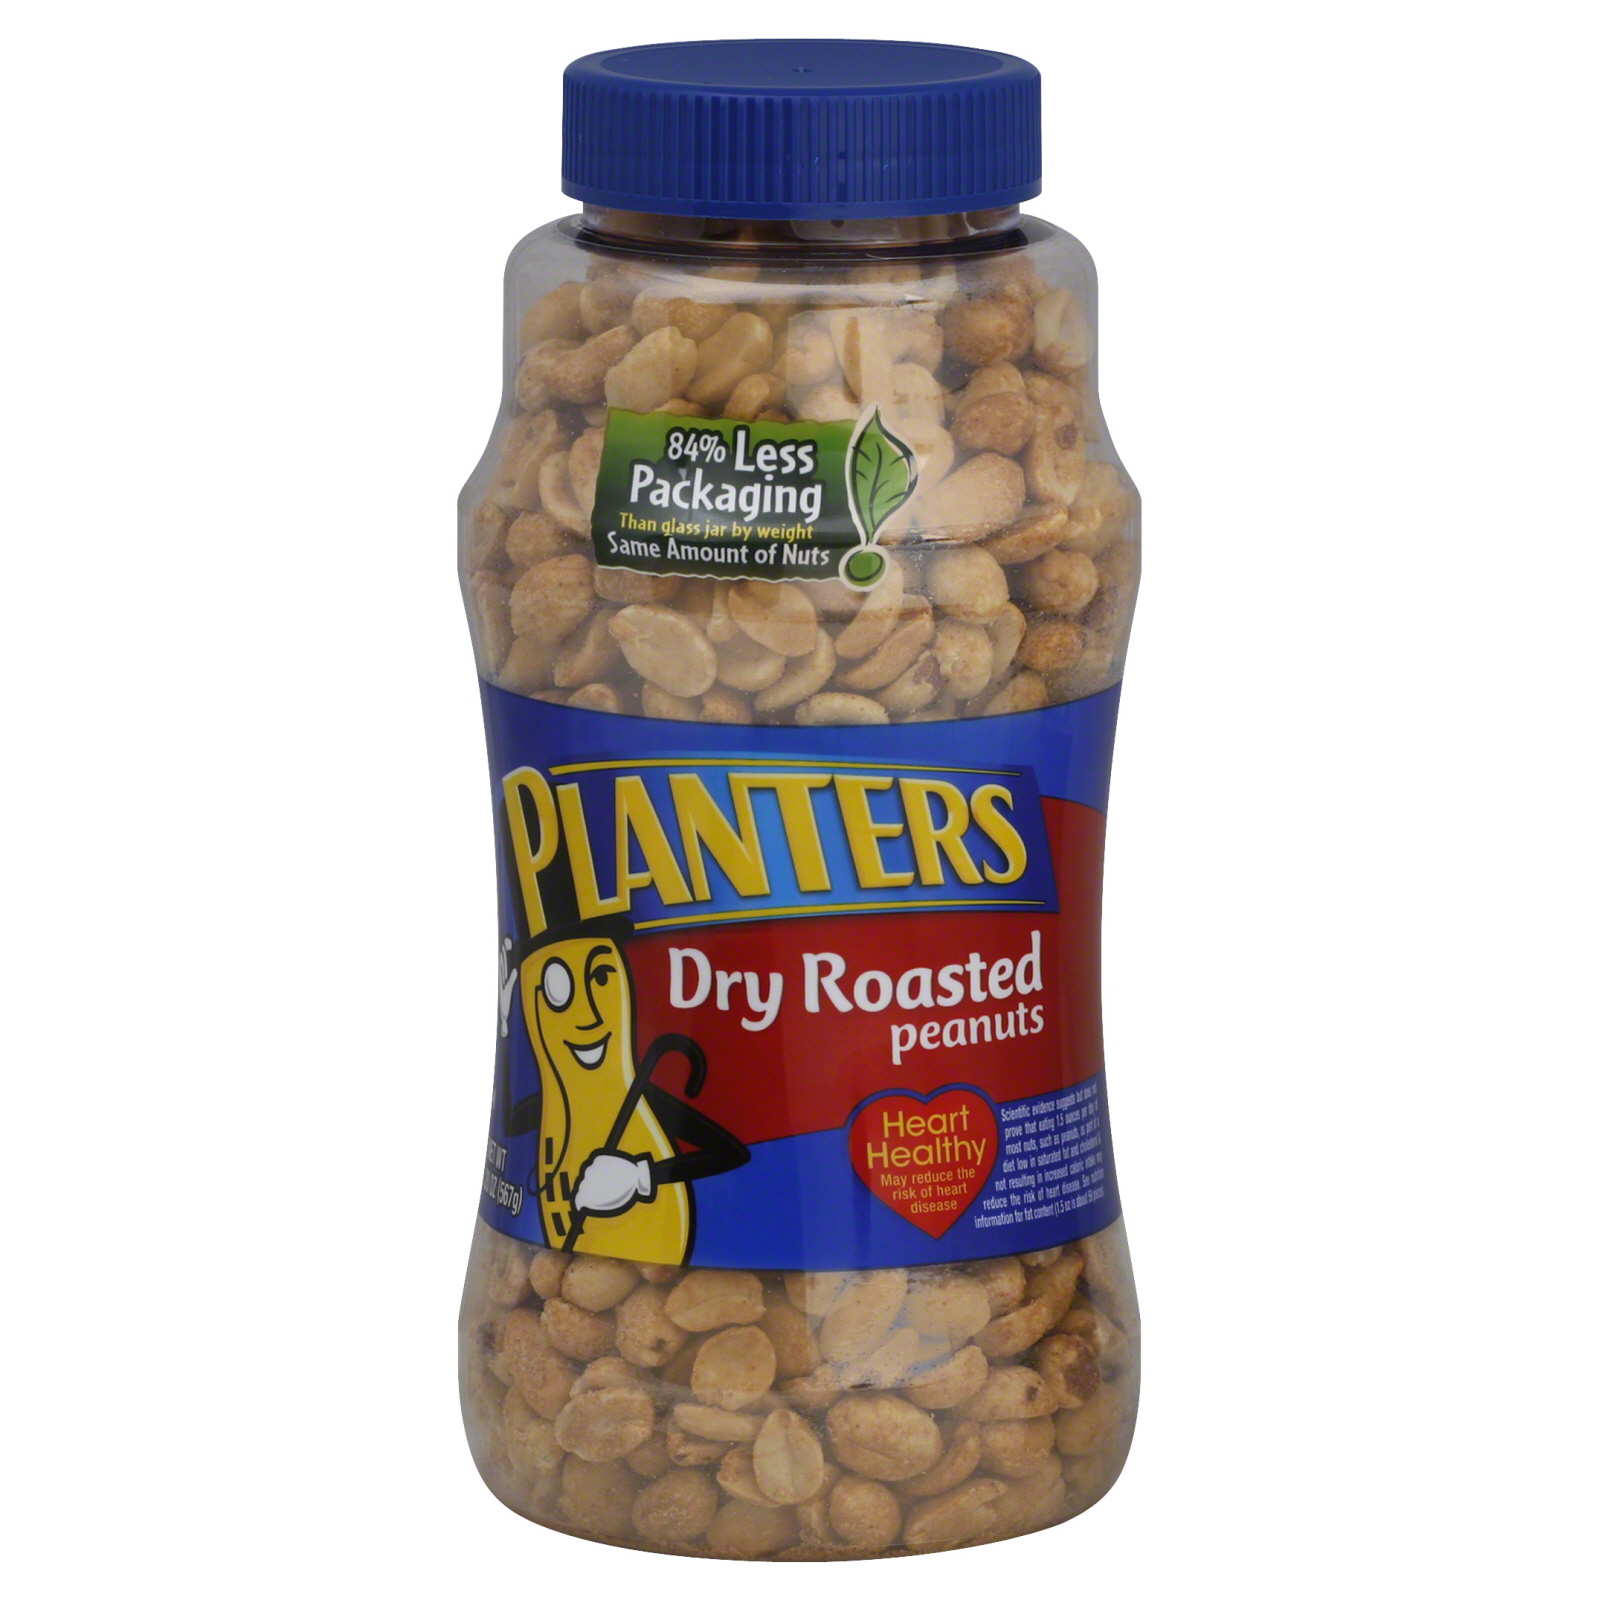 Planters Dry Roasted Peanuts, 1 lb 4 oz (20 oz) 567 g